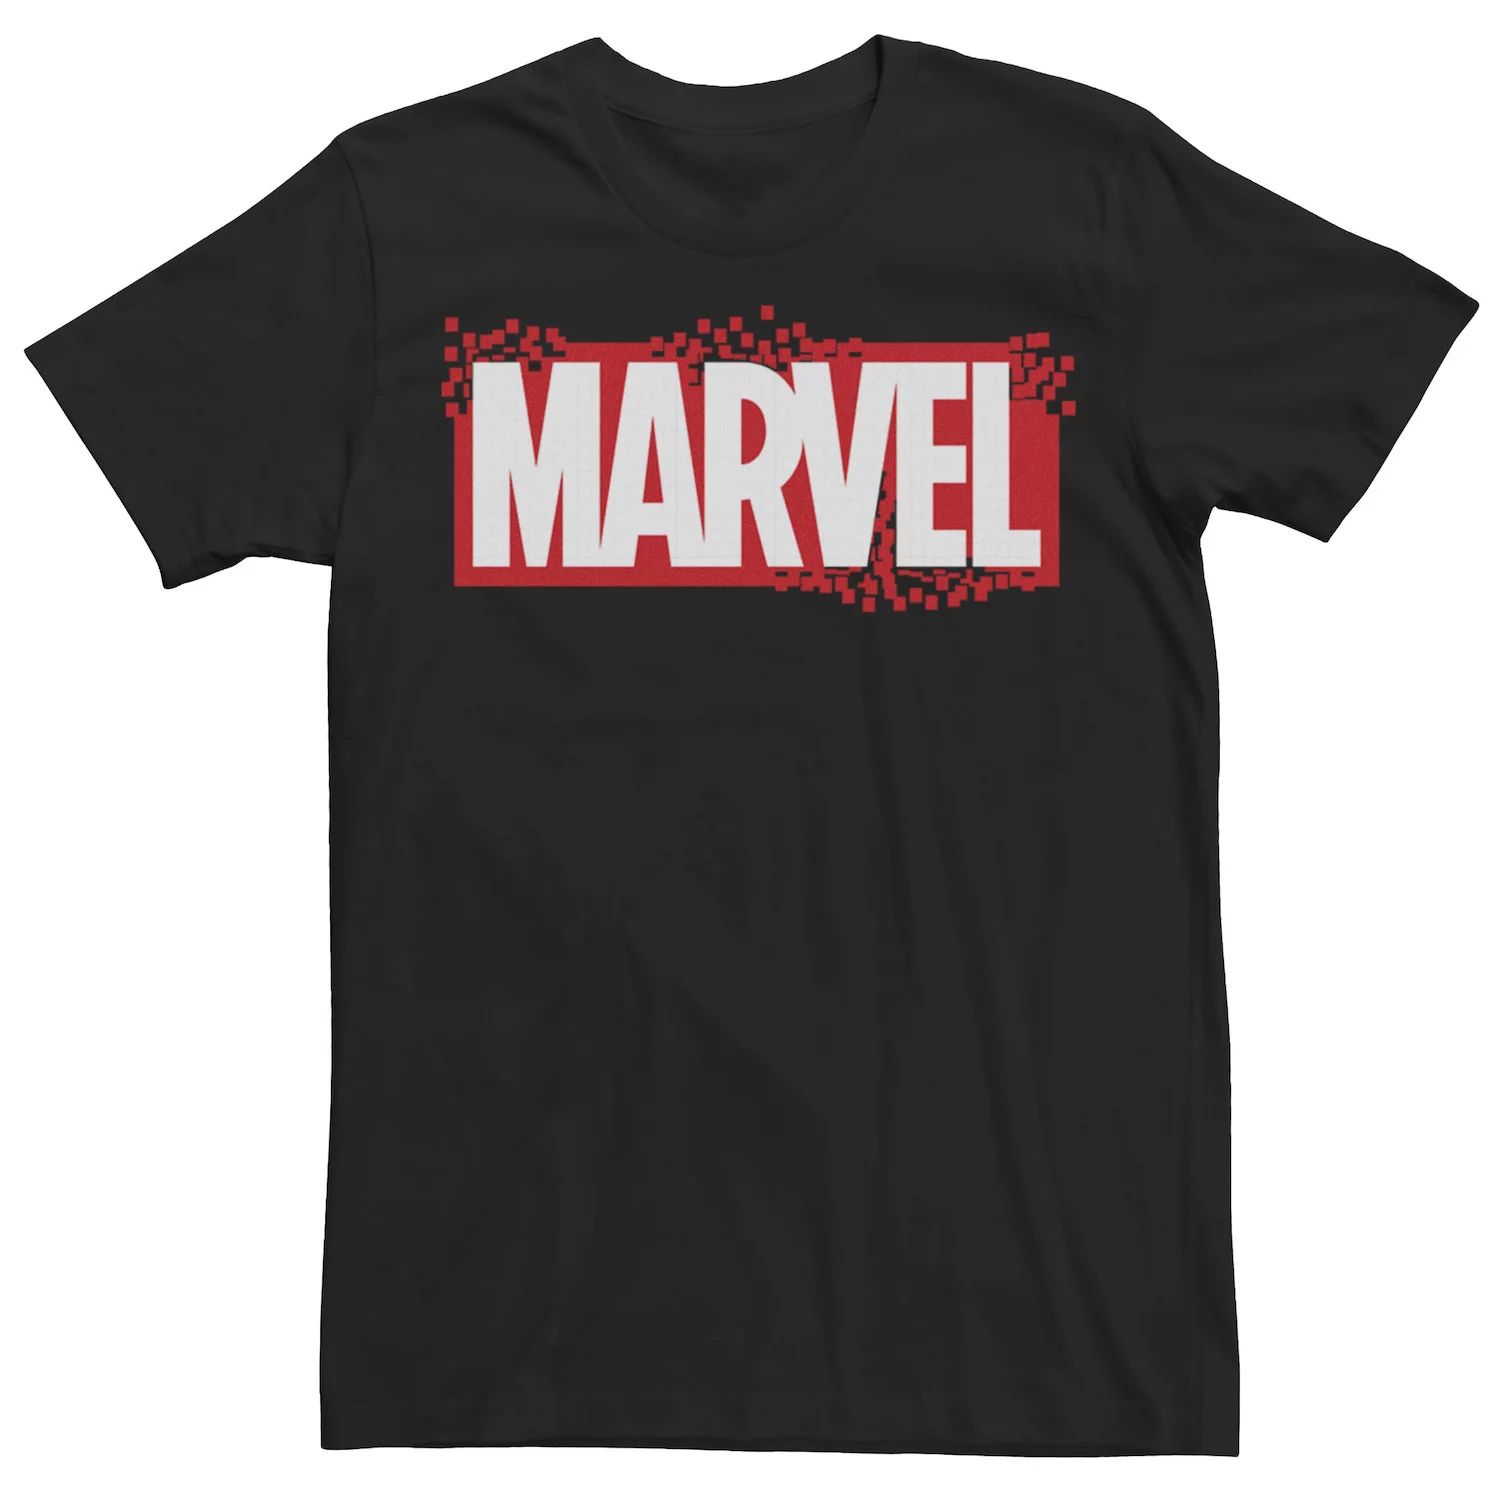 мужская классическая футболка с графическим логотипом marvel Мужская футболка с графическим логотипом Pixel Breakaway Marvel